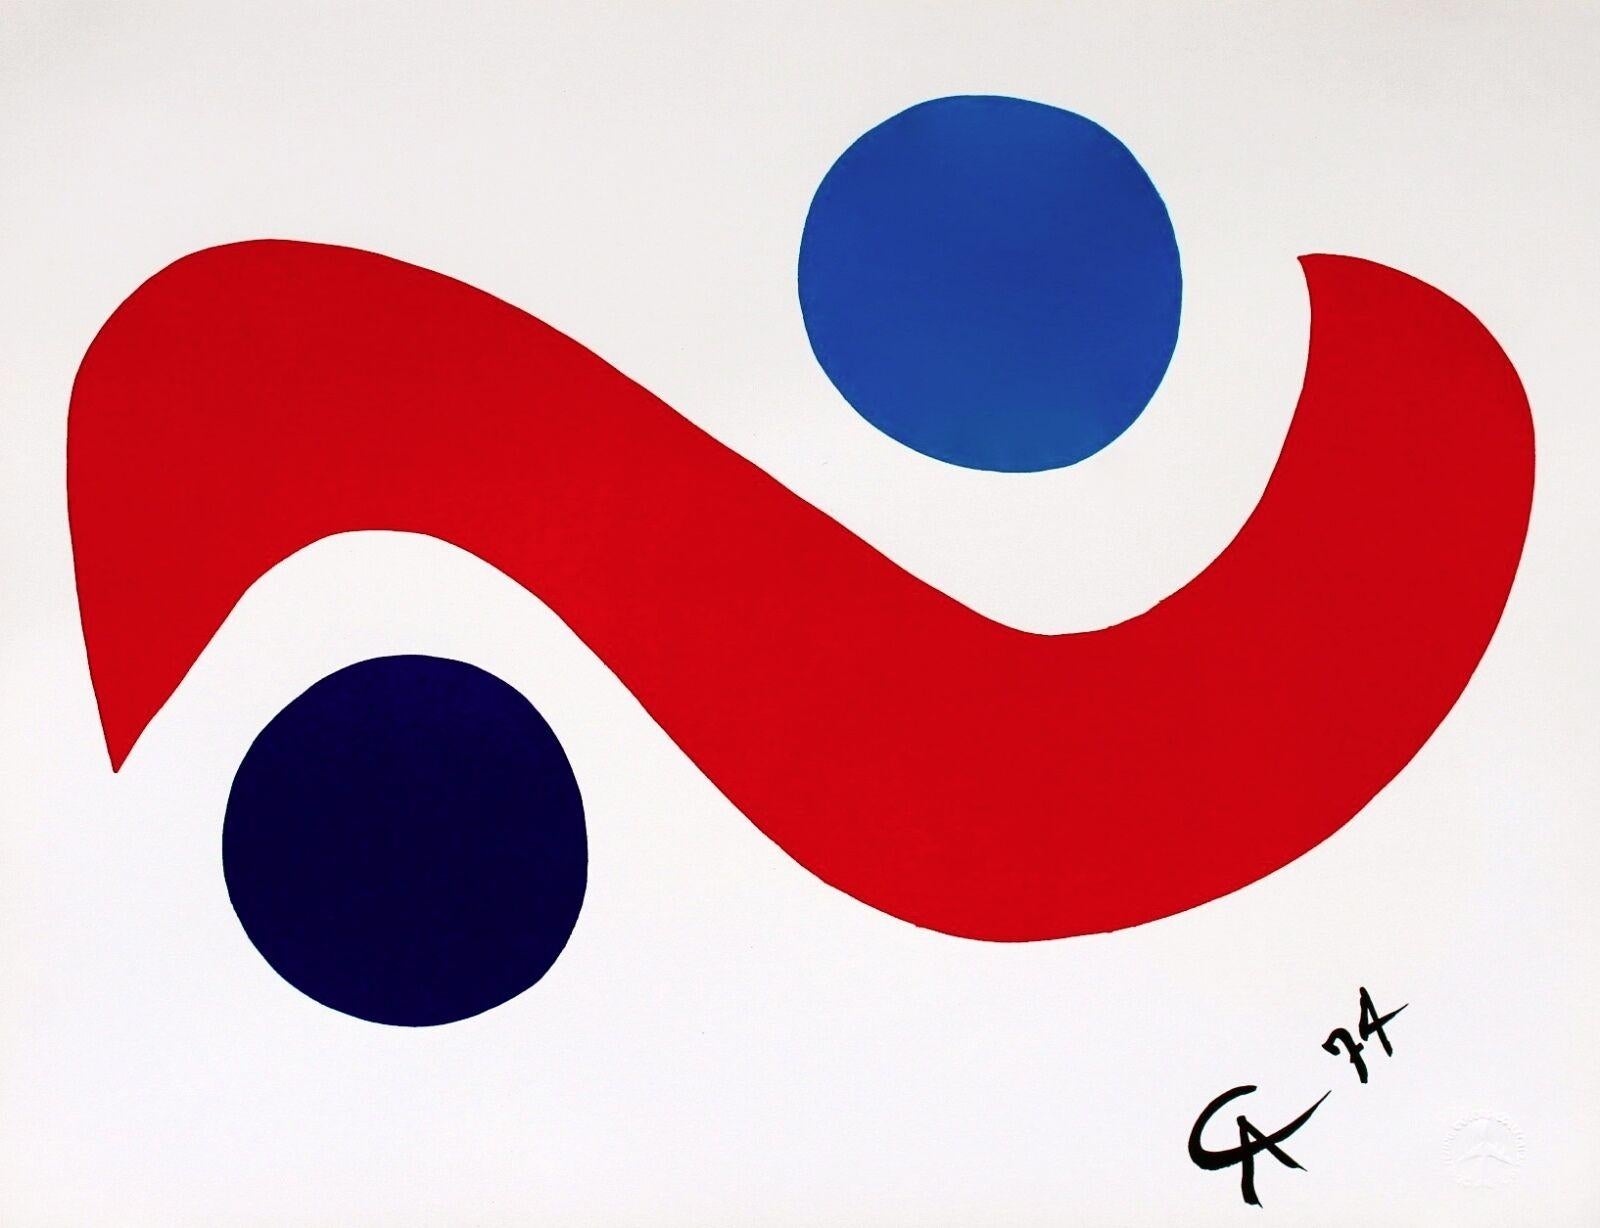 Sky Bird, Braniff Flying Colors suite, Alexander Calder